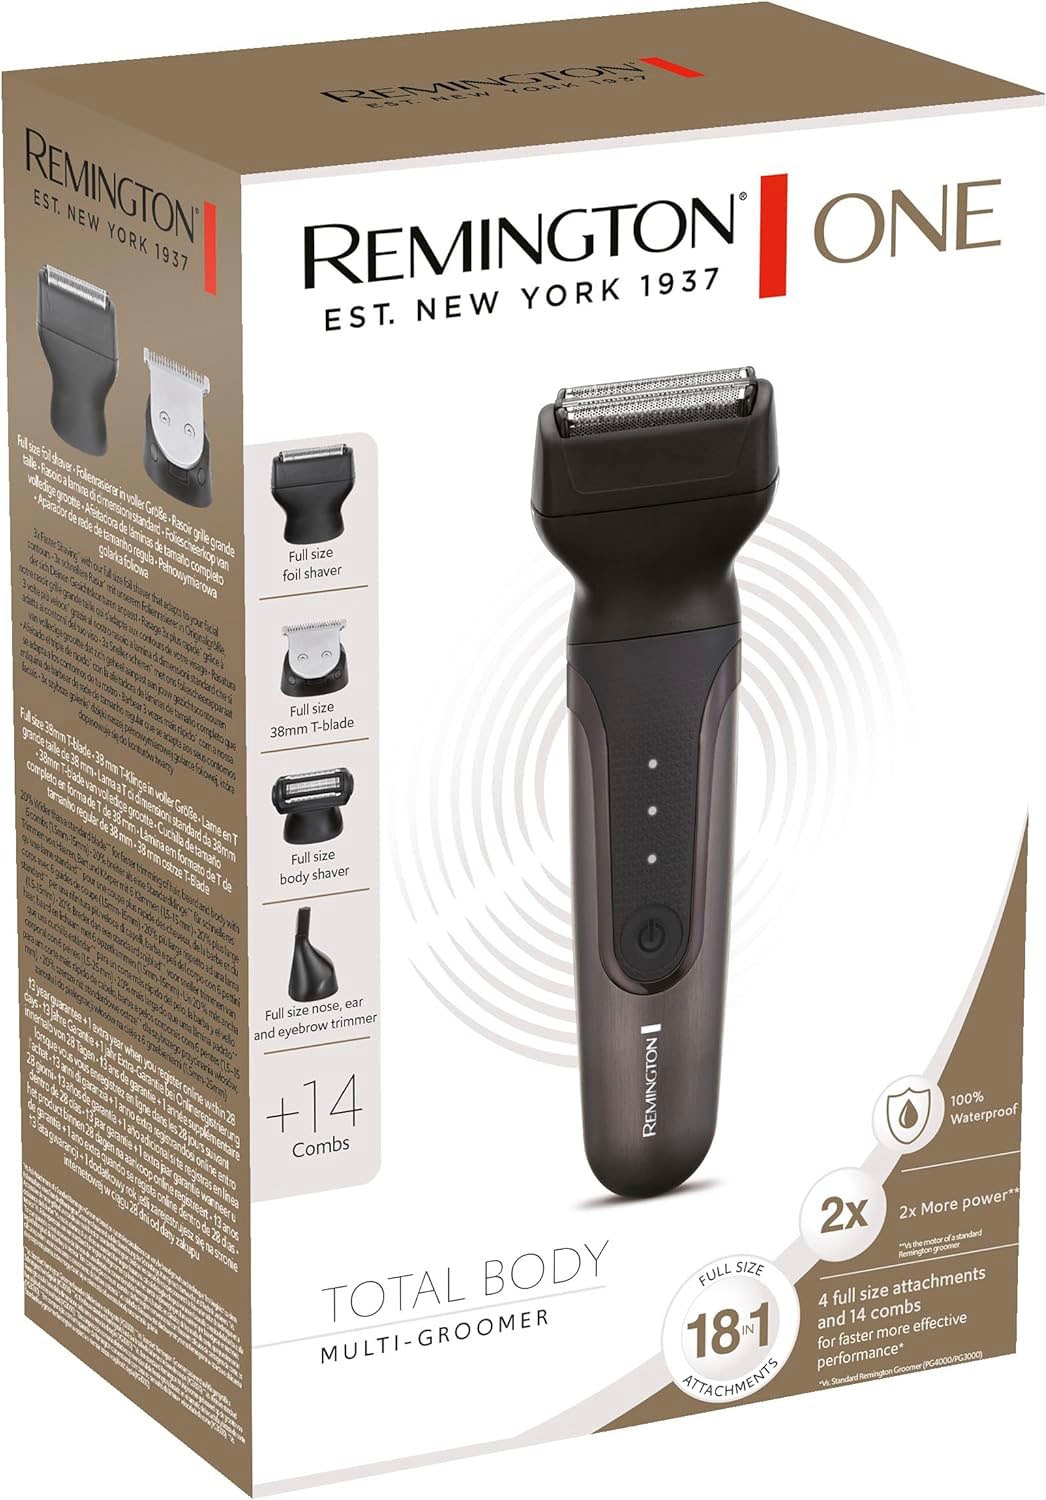 Remington Haar- und Bartschneider »PG780 One Totalbody Multigroomer«, 4 Aufsätze, inkl. 18 Aufsteckköpfe/-kämme